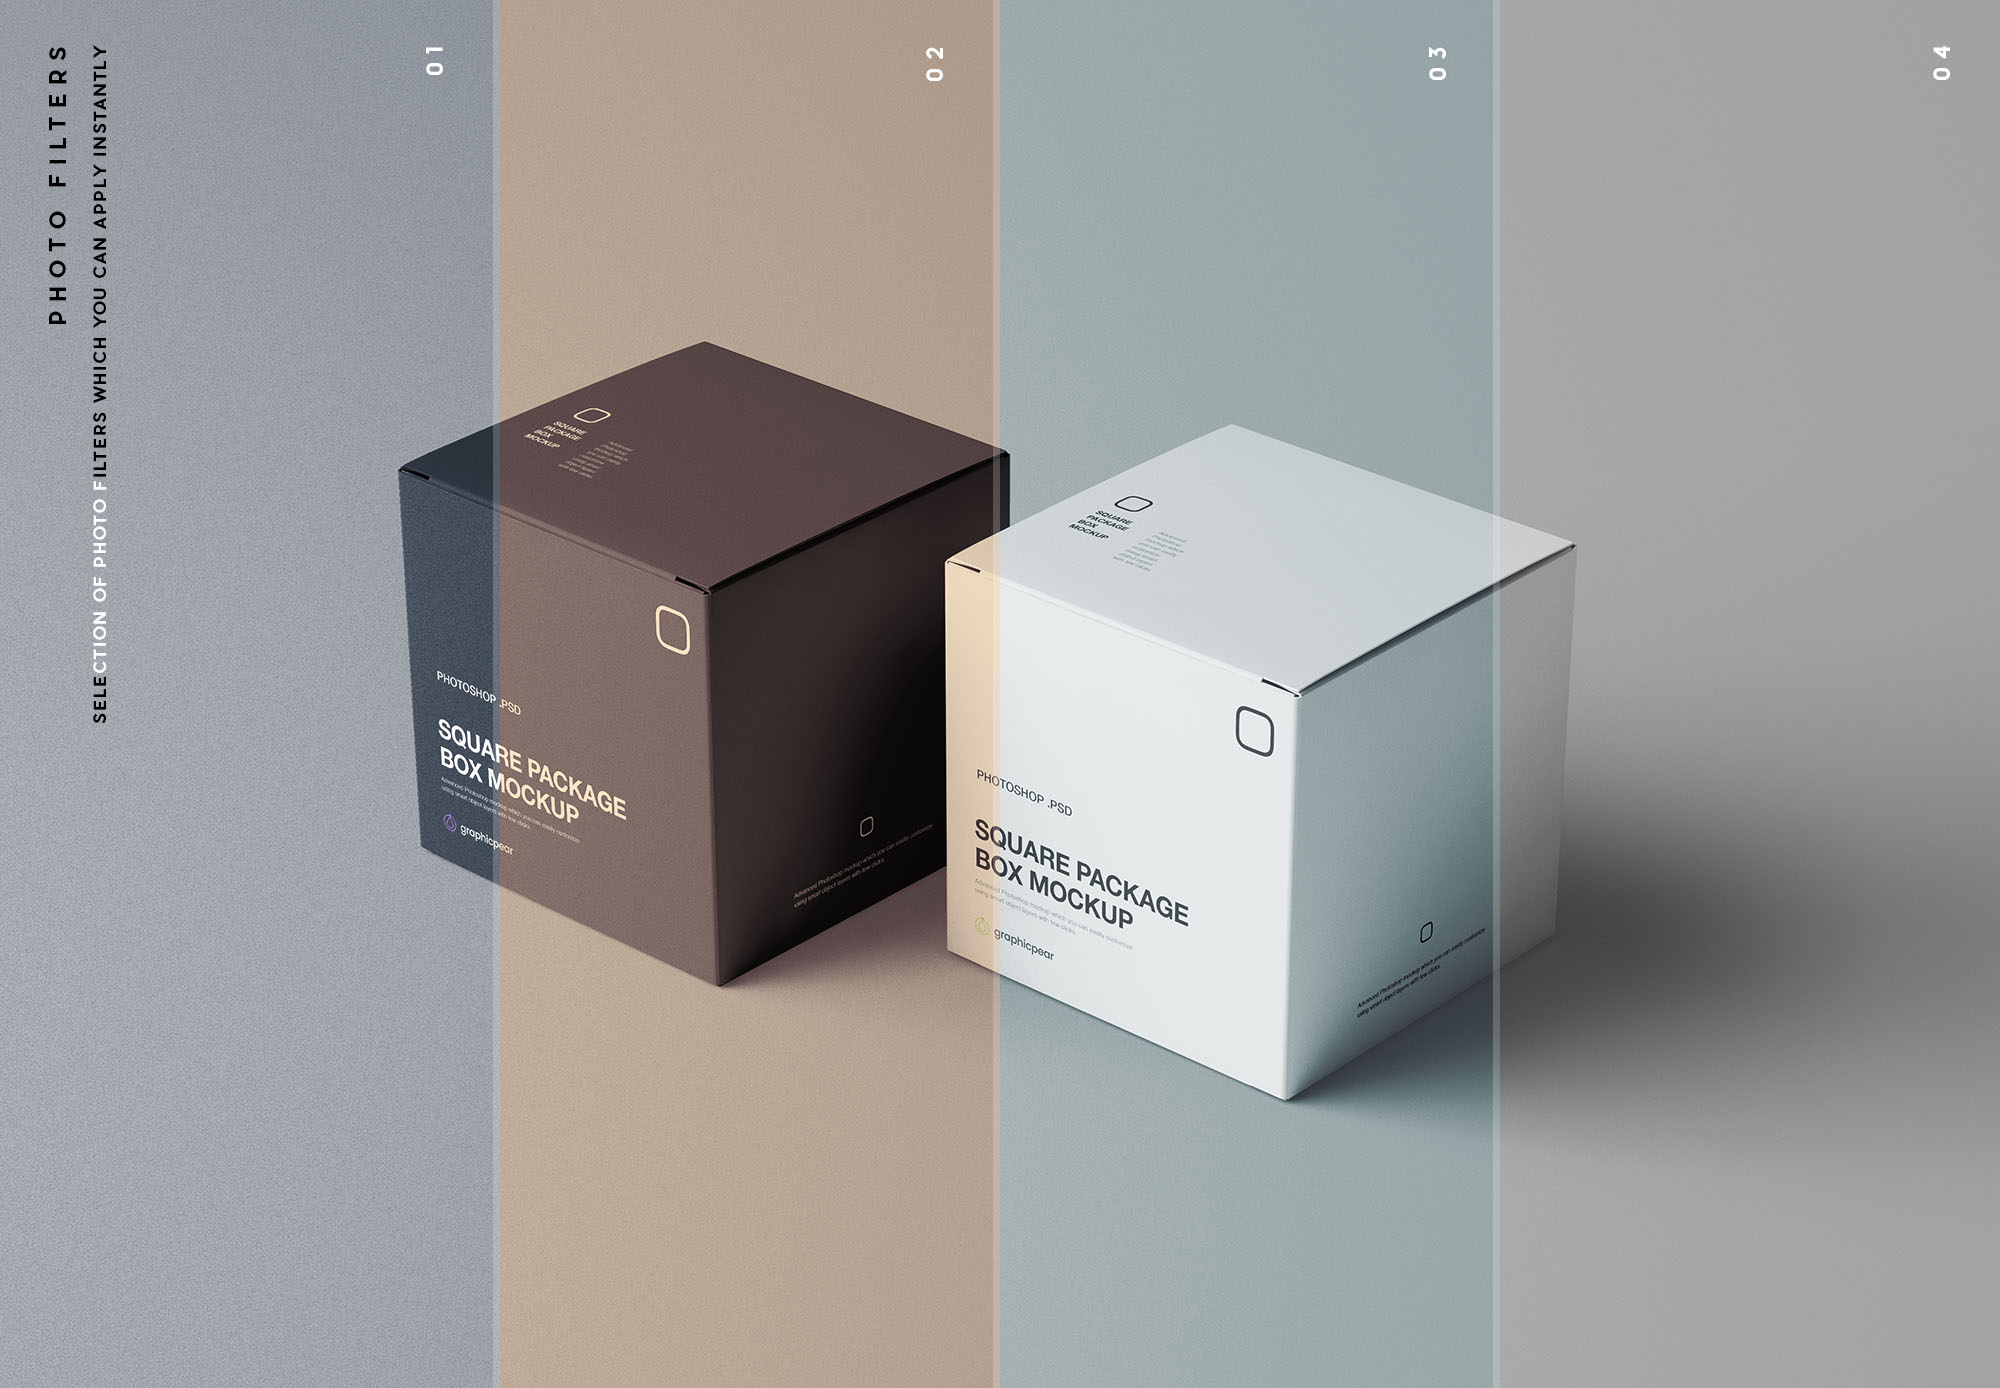 方形包装盒设计效果图样机模板 Square Package Box Mockup插图(8)